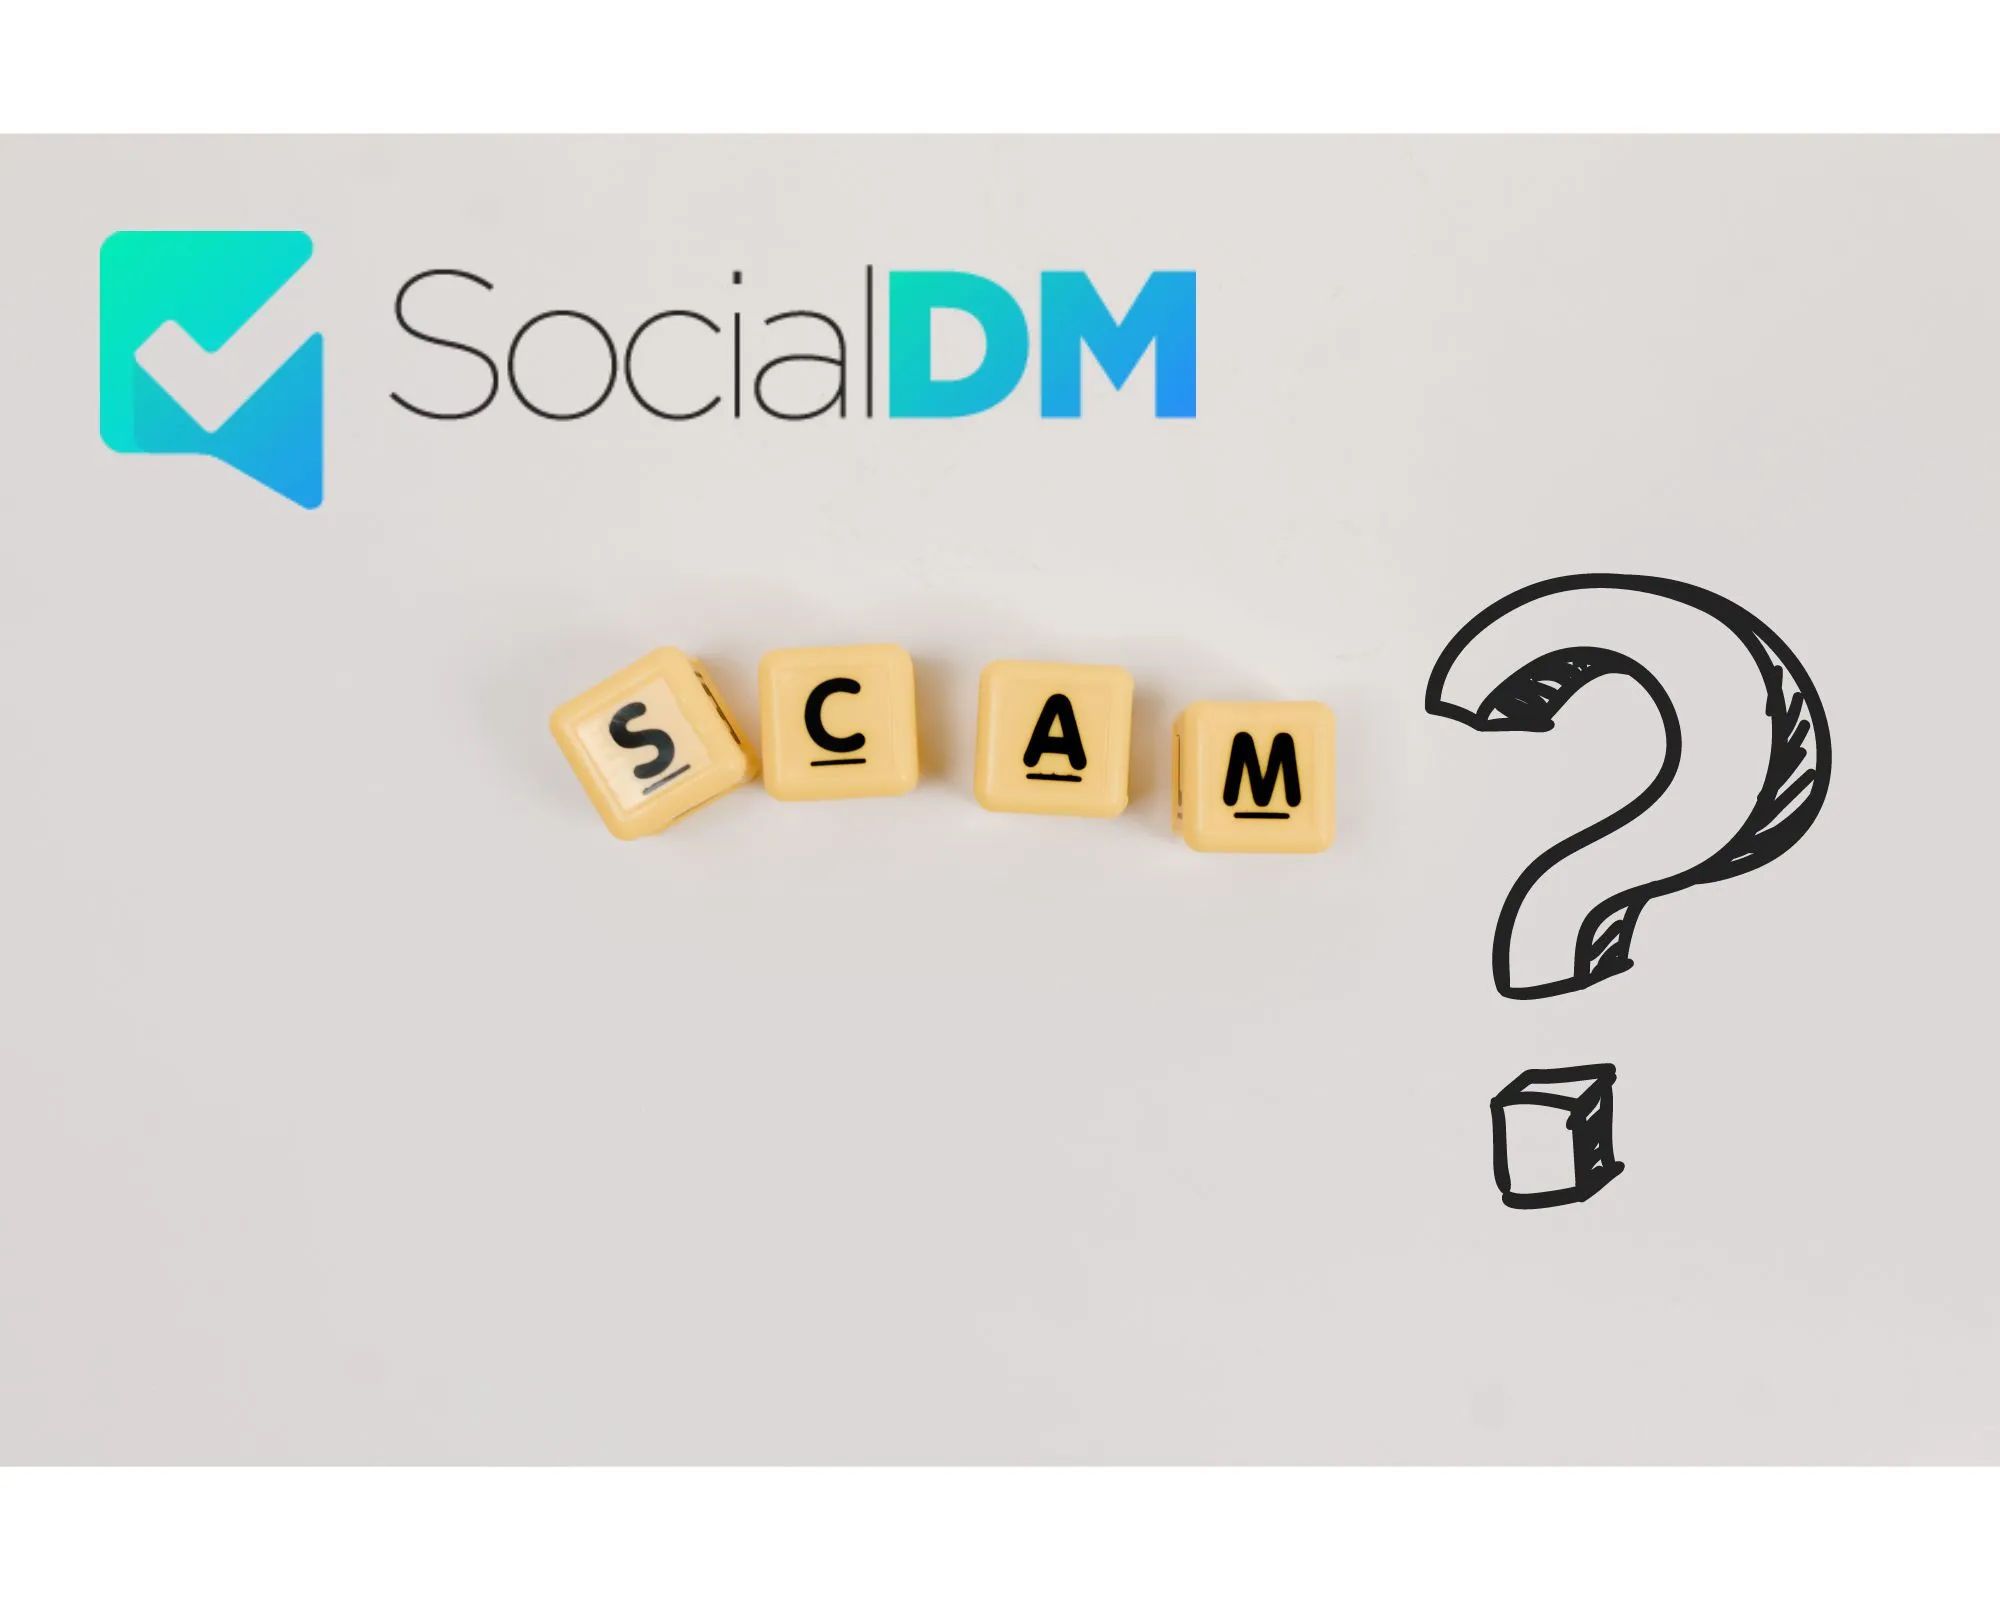 SocialDM.co scam or legit